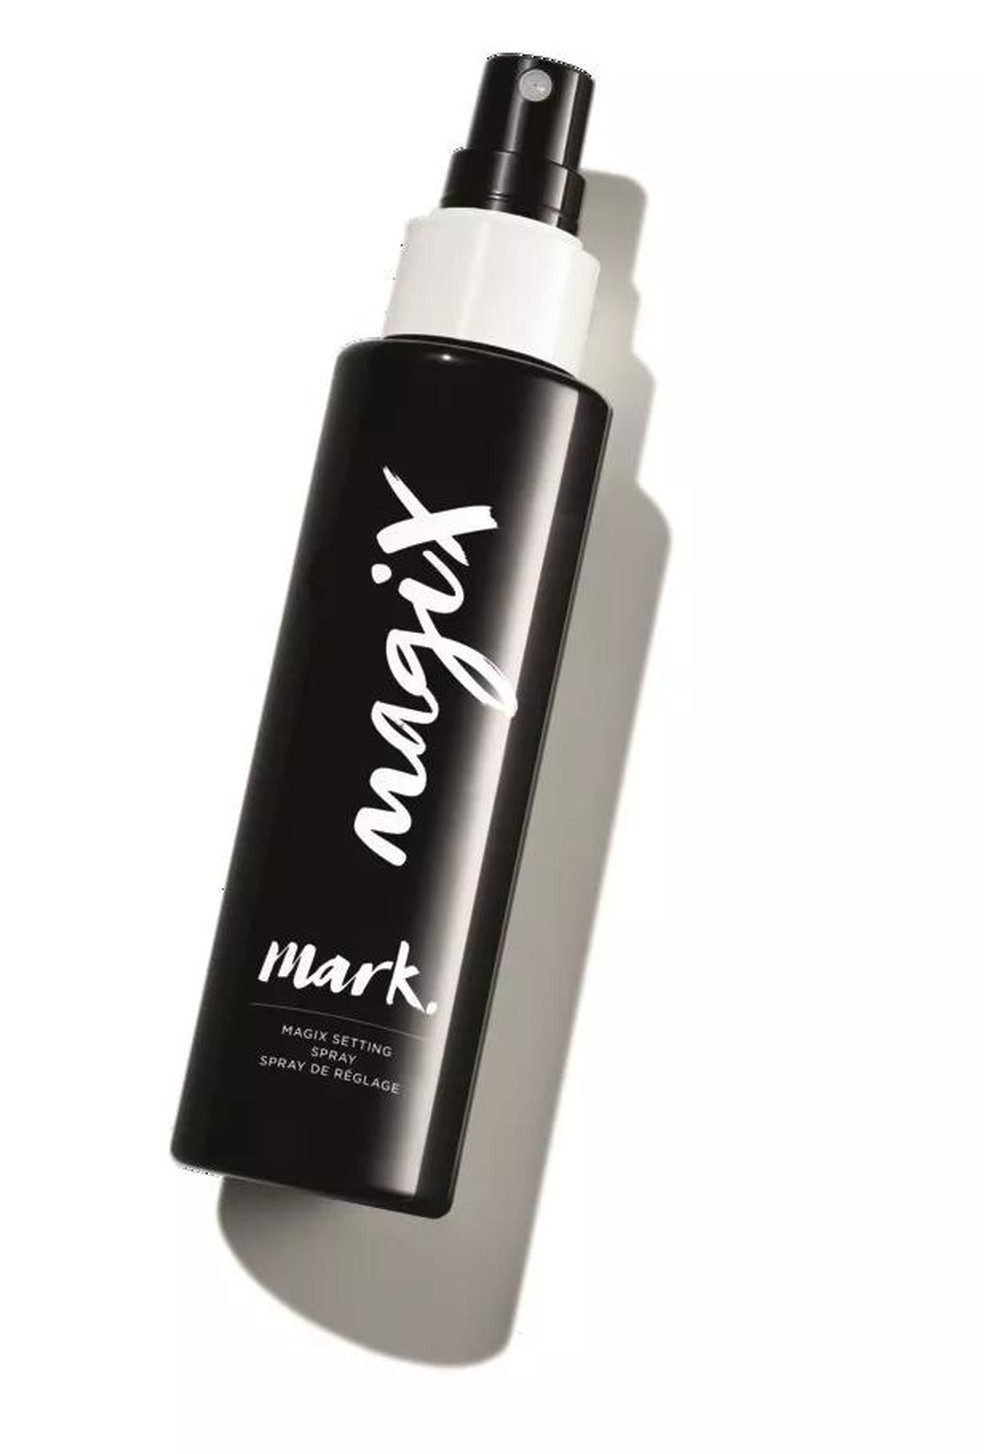 Magix Spray Preparador e Fixador de Maquiagem, Avon, R$27,99 (Foto: Divulgação) — Foto: Marie Claire